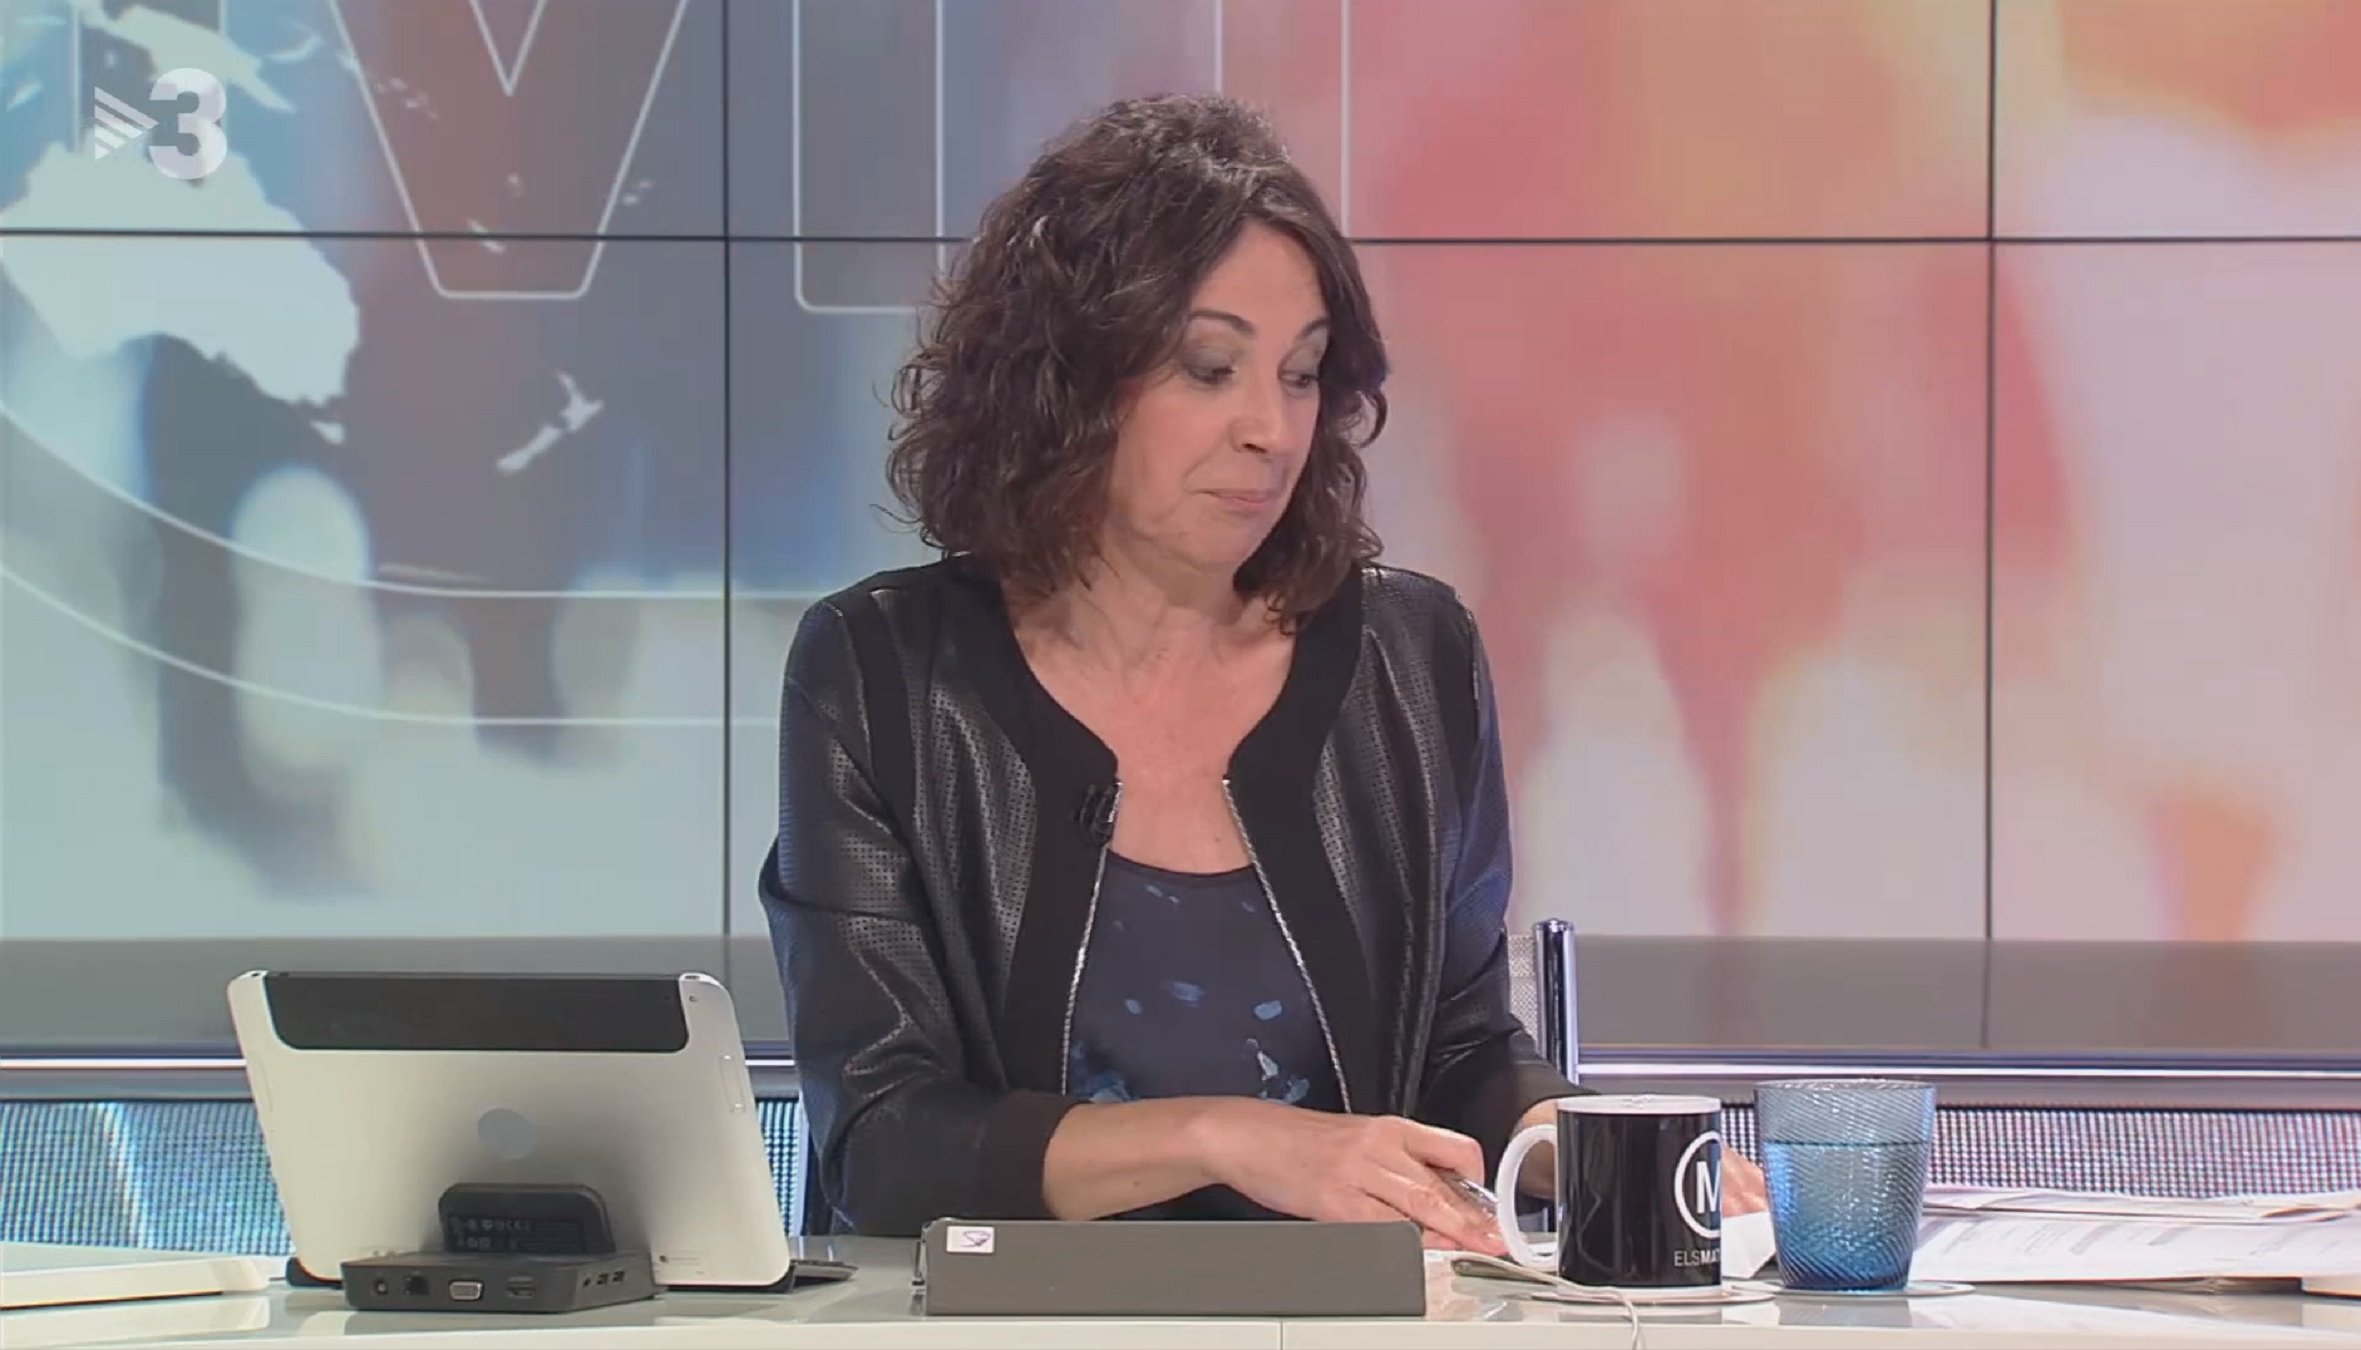 Tertuliano de TV3 trata a Cataluña de prostíbulo y Puigdemont, el amo del burdel